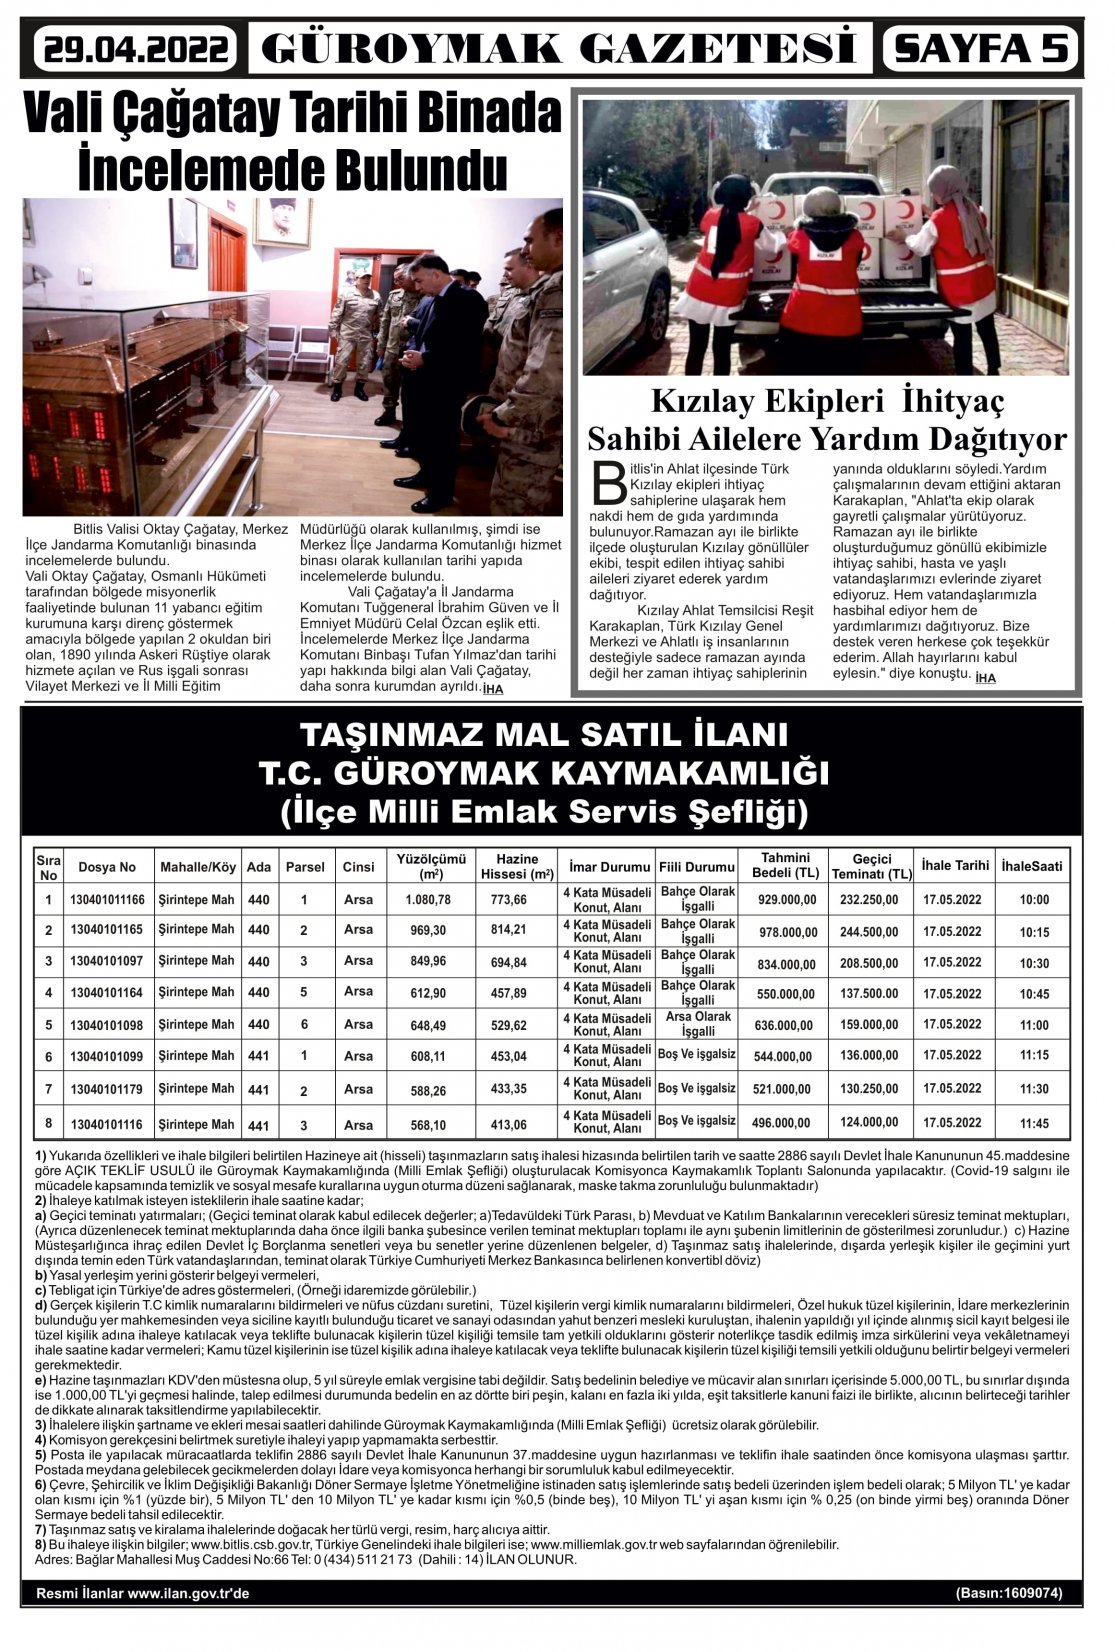 Güroymak Gazetesi 5.jpg Sayılı Gazete Küpürü